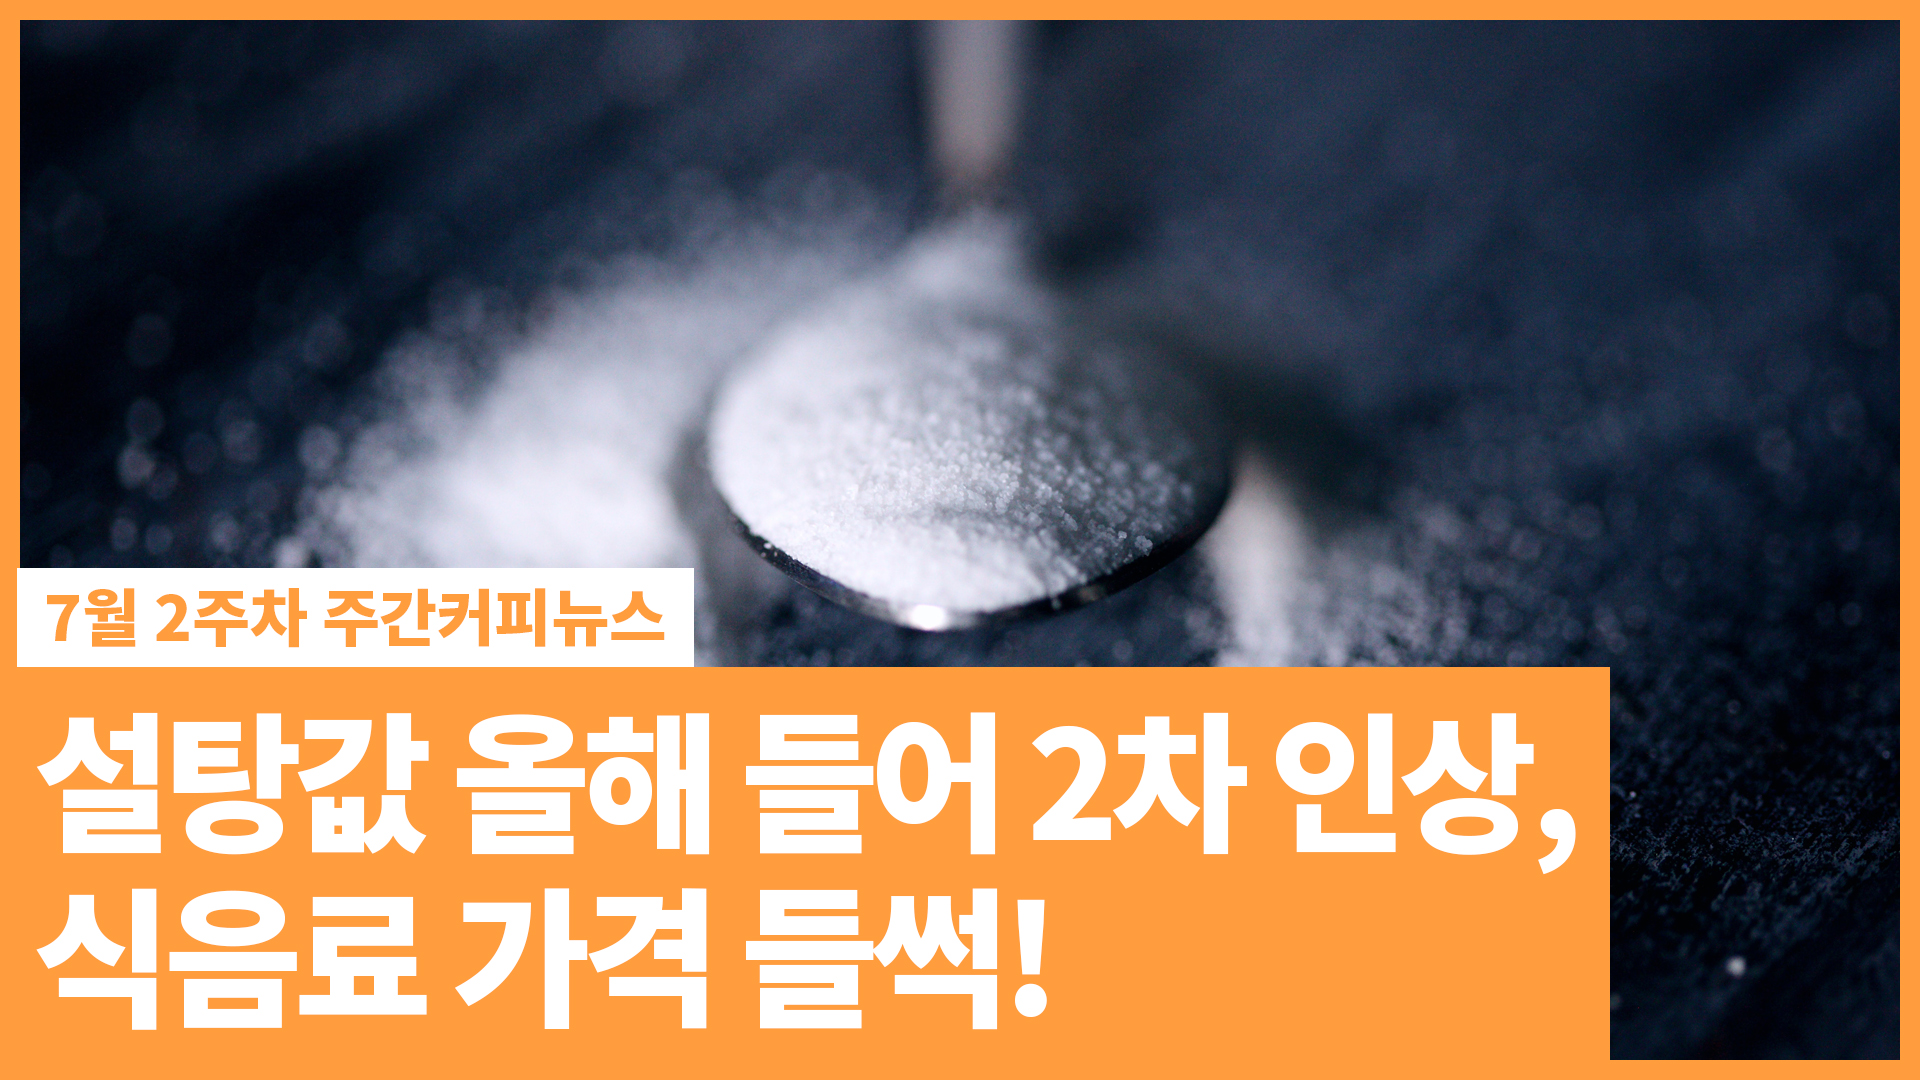 설탕값 올해 들어 2차 인상, 식음료 가격 들썩! / 7월 2주 주간커피뉴스, 커피TV